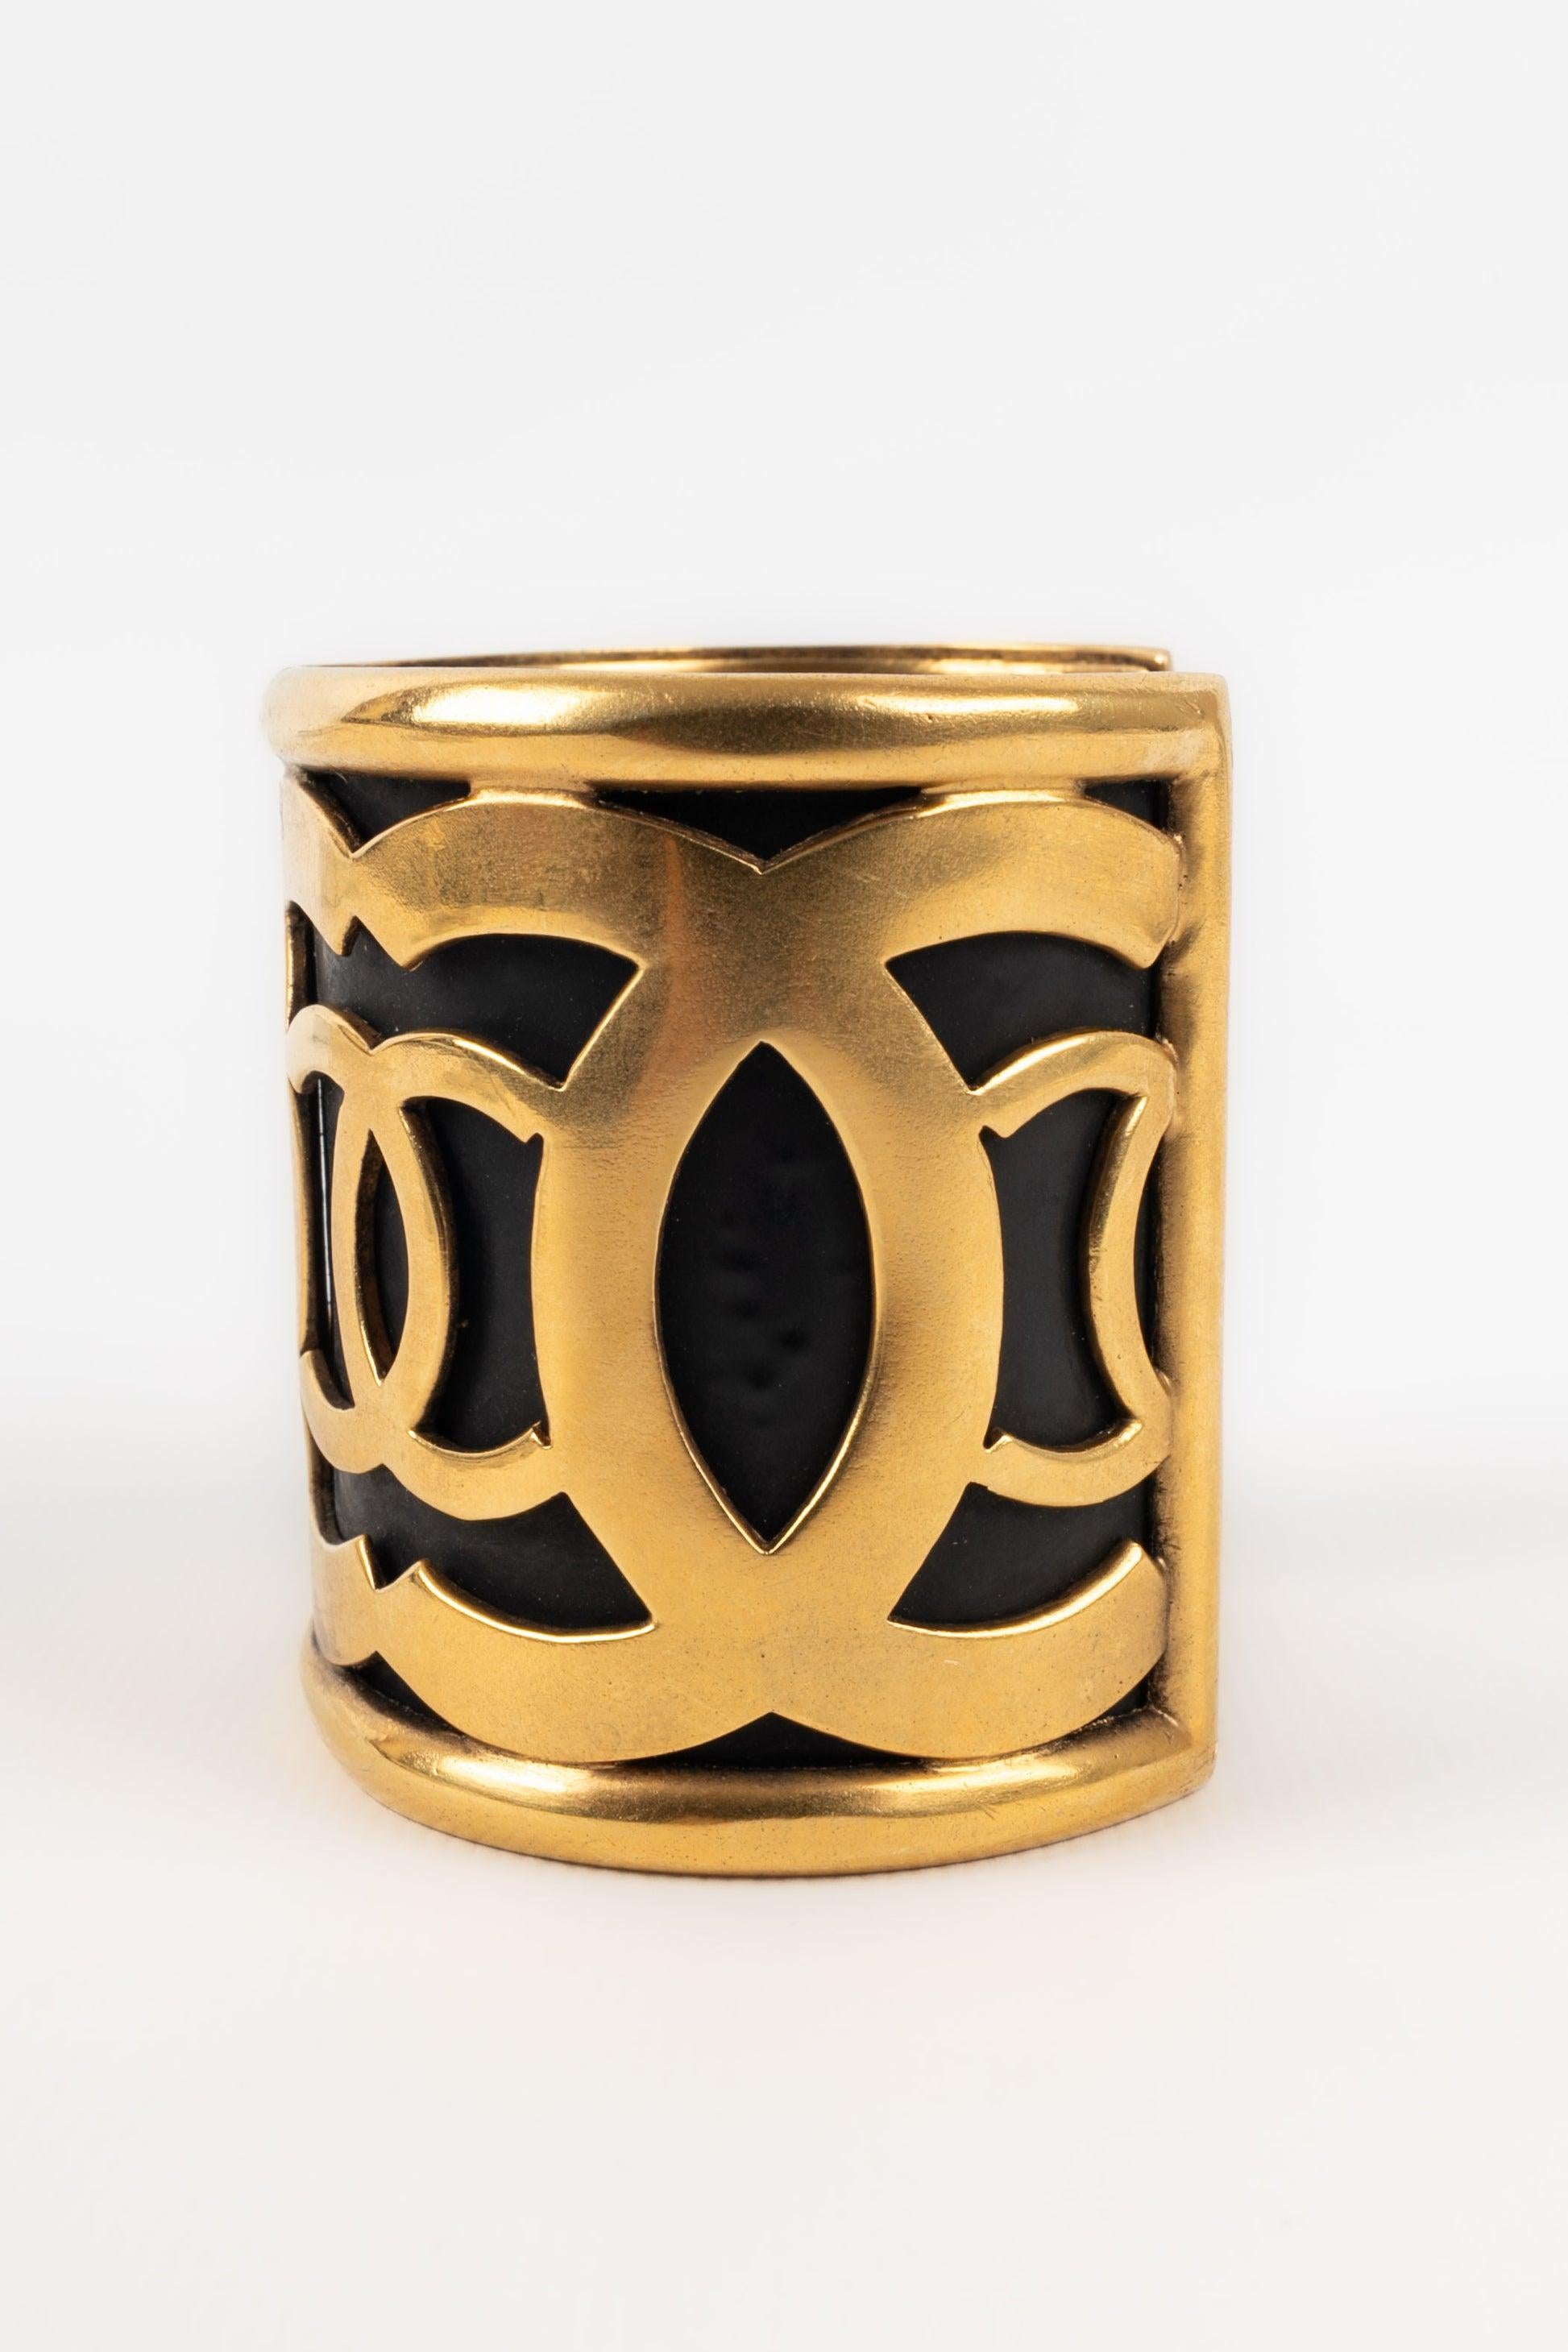 Chanel - Manschettenarmband aus goldenem Metall auf schwarzem Grund.

Zusätzliche Informationen:
Zustand: Sehr guter Zustand
Abmessungen: Höhe: 6 cm - Länge: 14,5 cm - Öffnung: 3,5 cm

Sellers Referenz: BRAB141